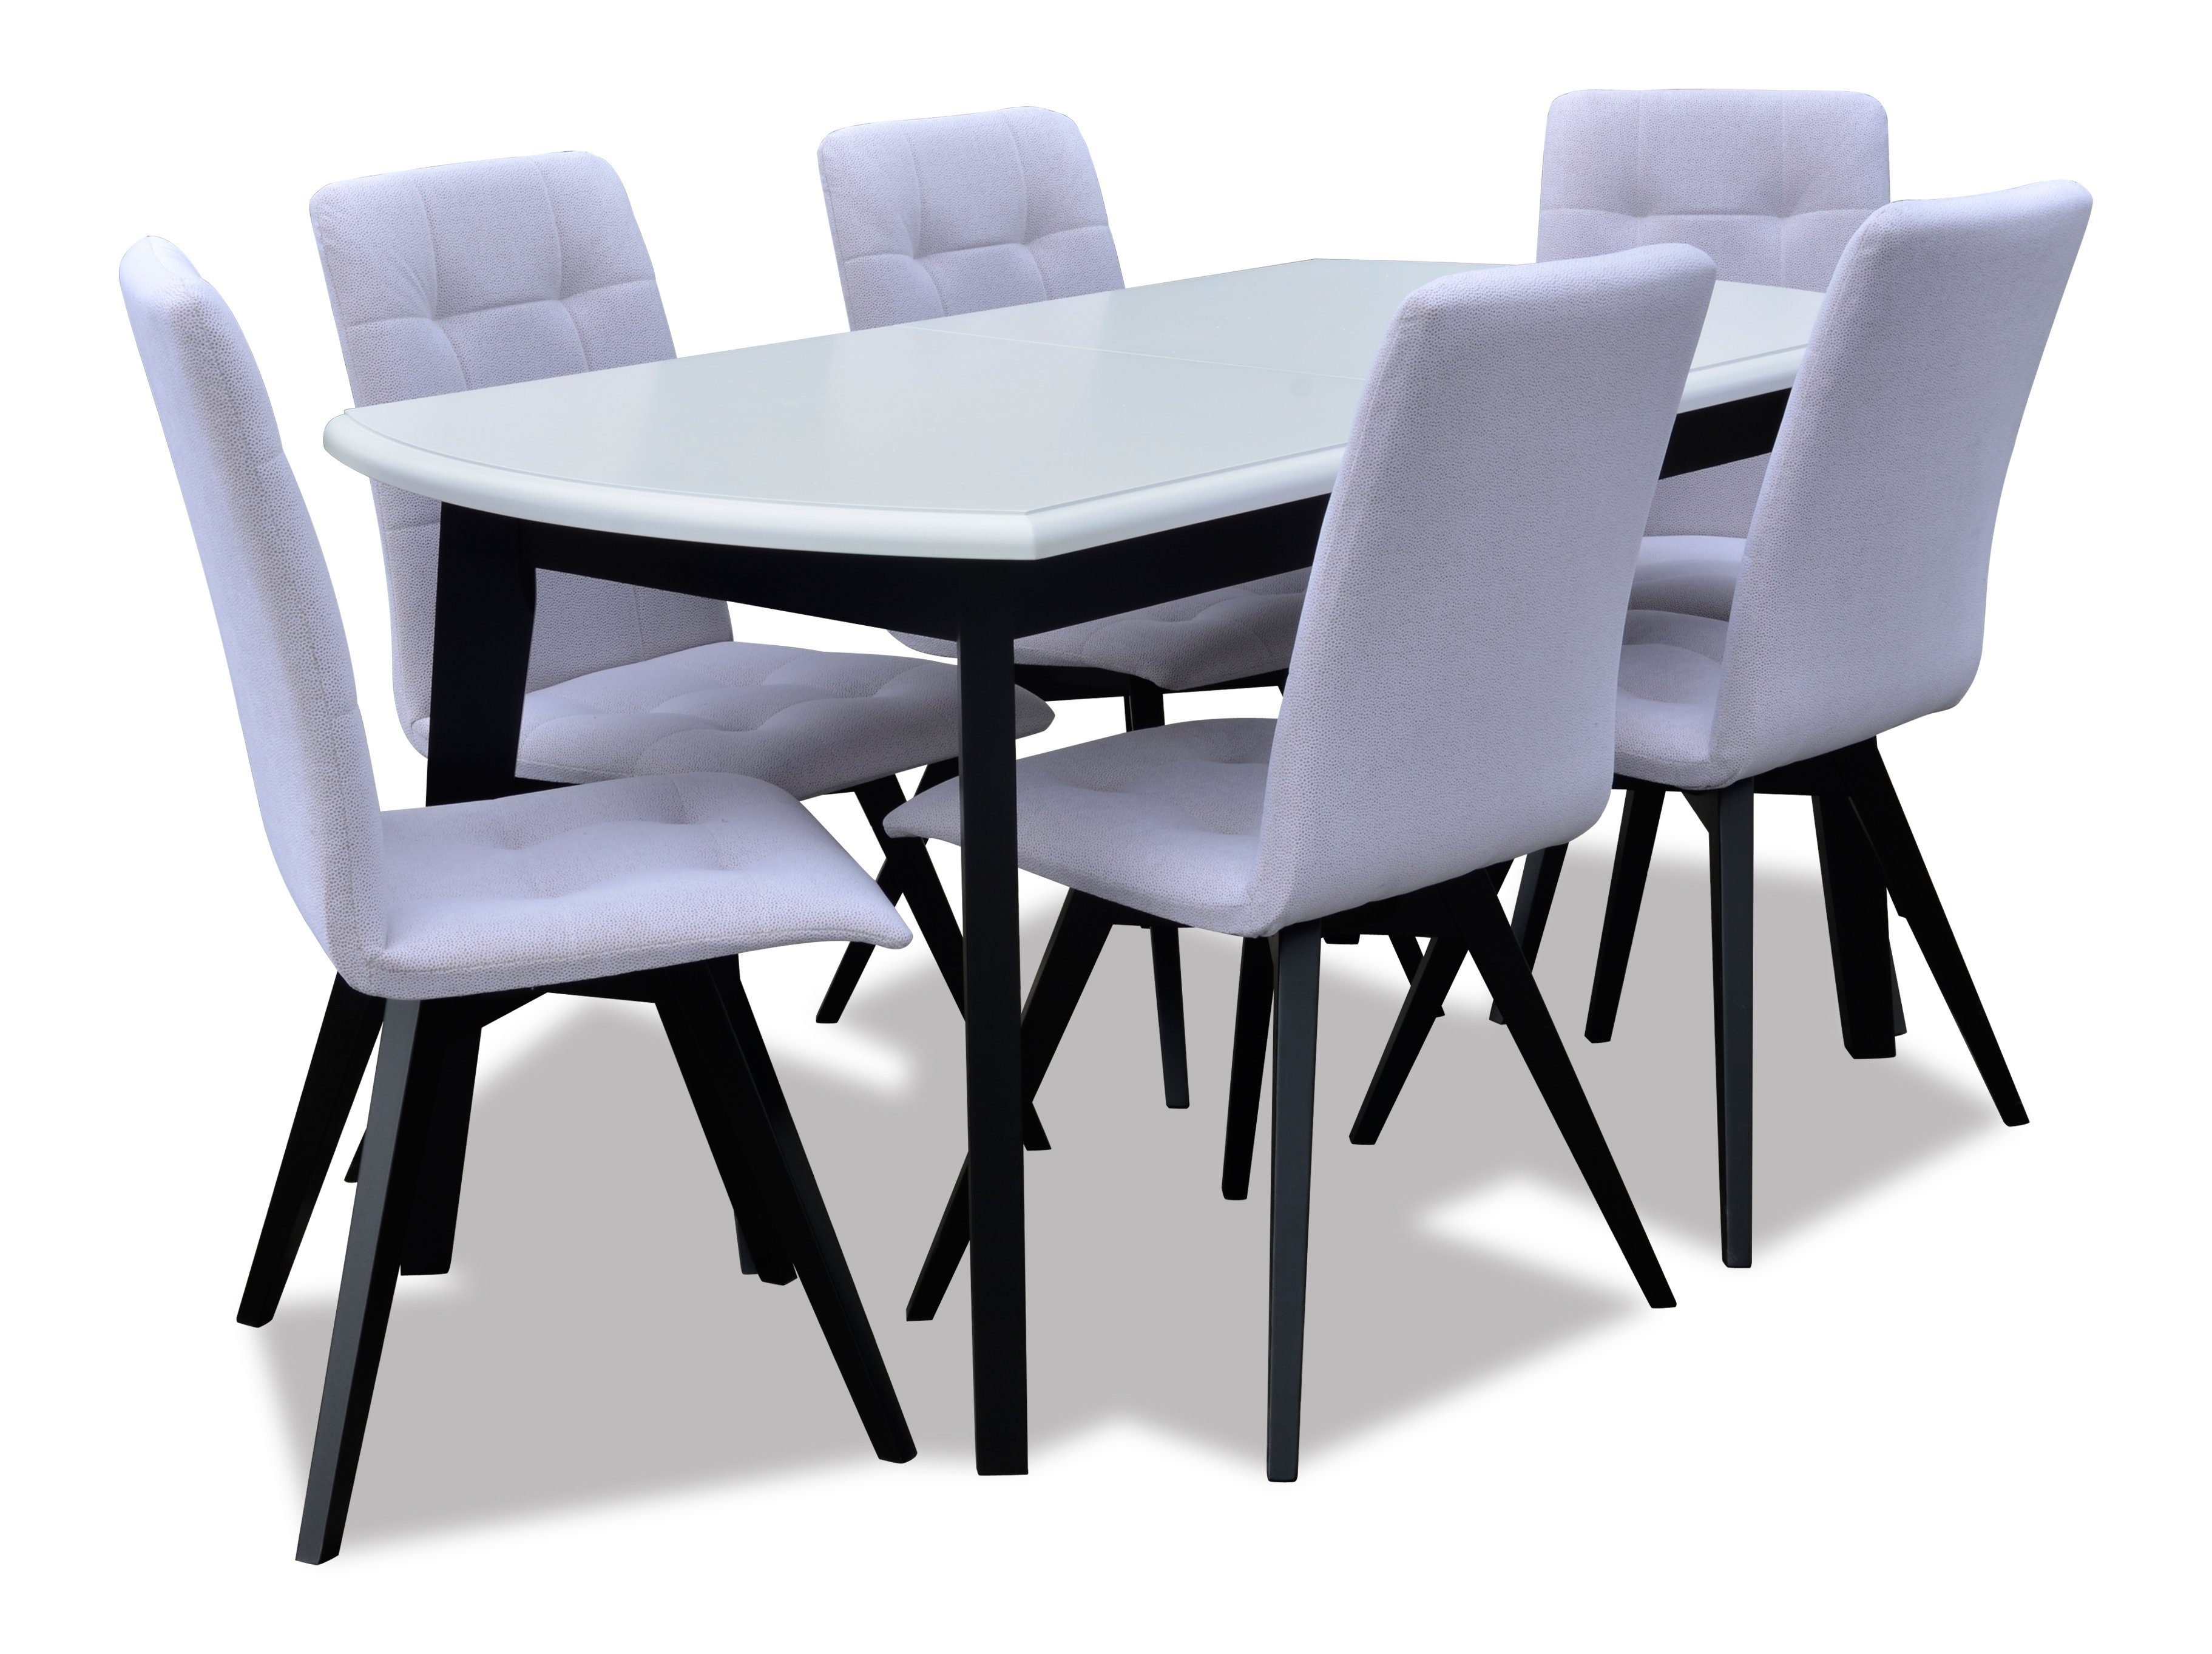 Beautysofa Sitzgruppe Essgruppe Tisch + 6 Stühle, Tisch + Stuhl Set Fornir, Modern